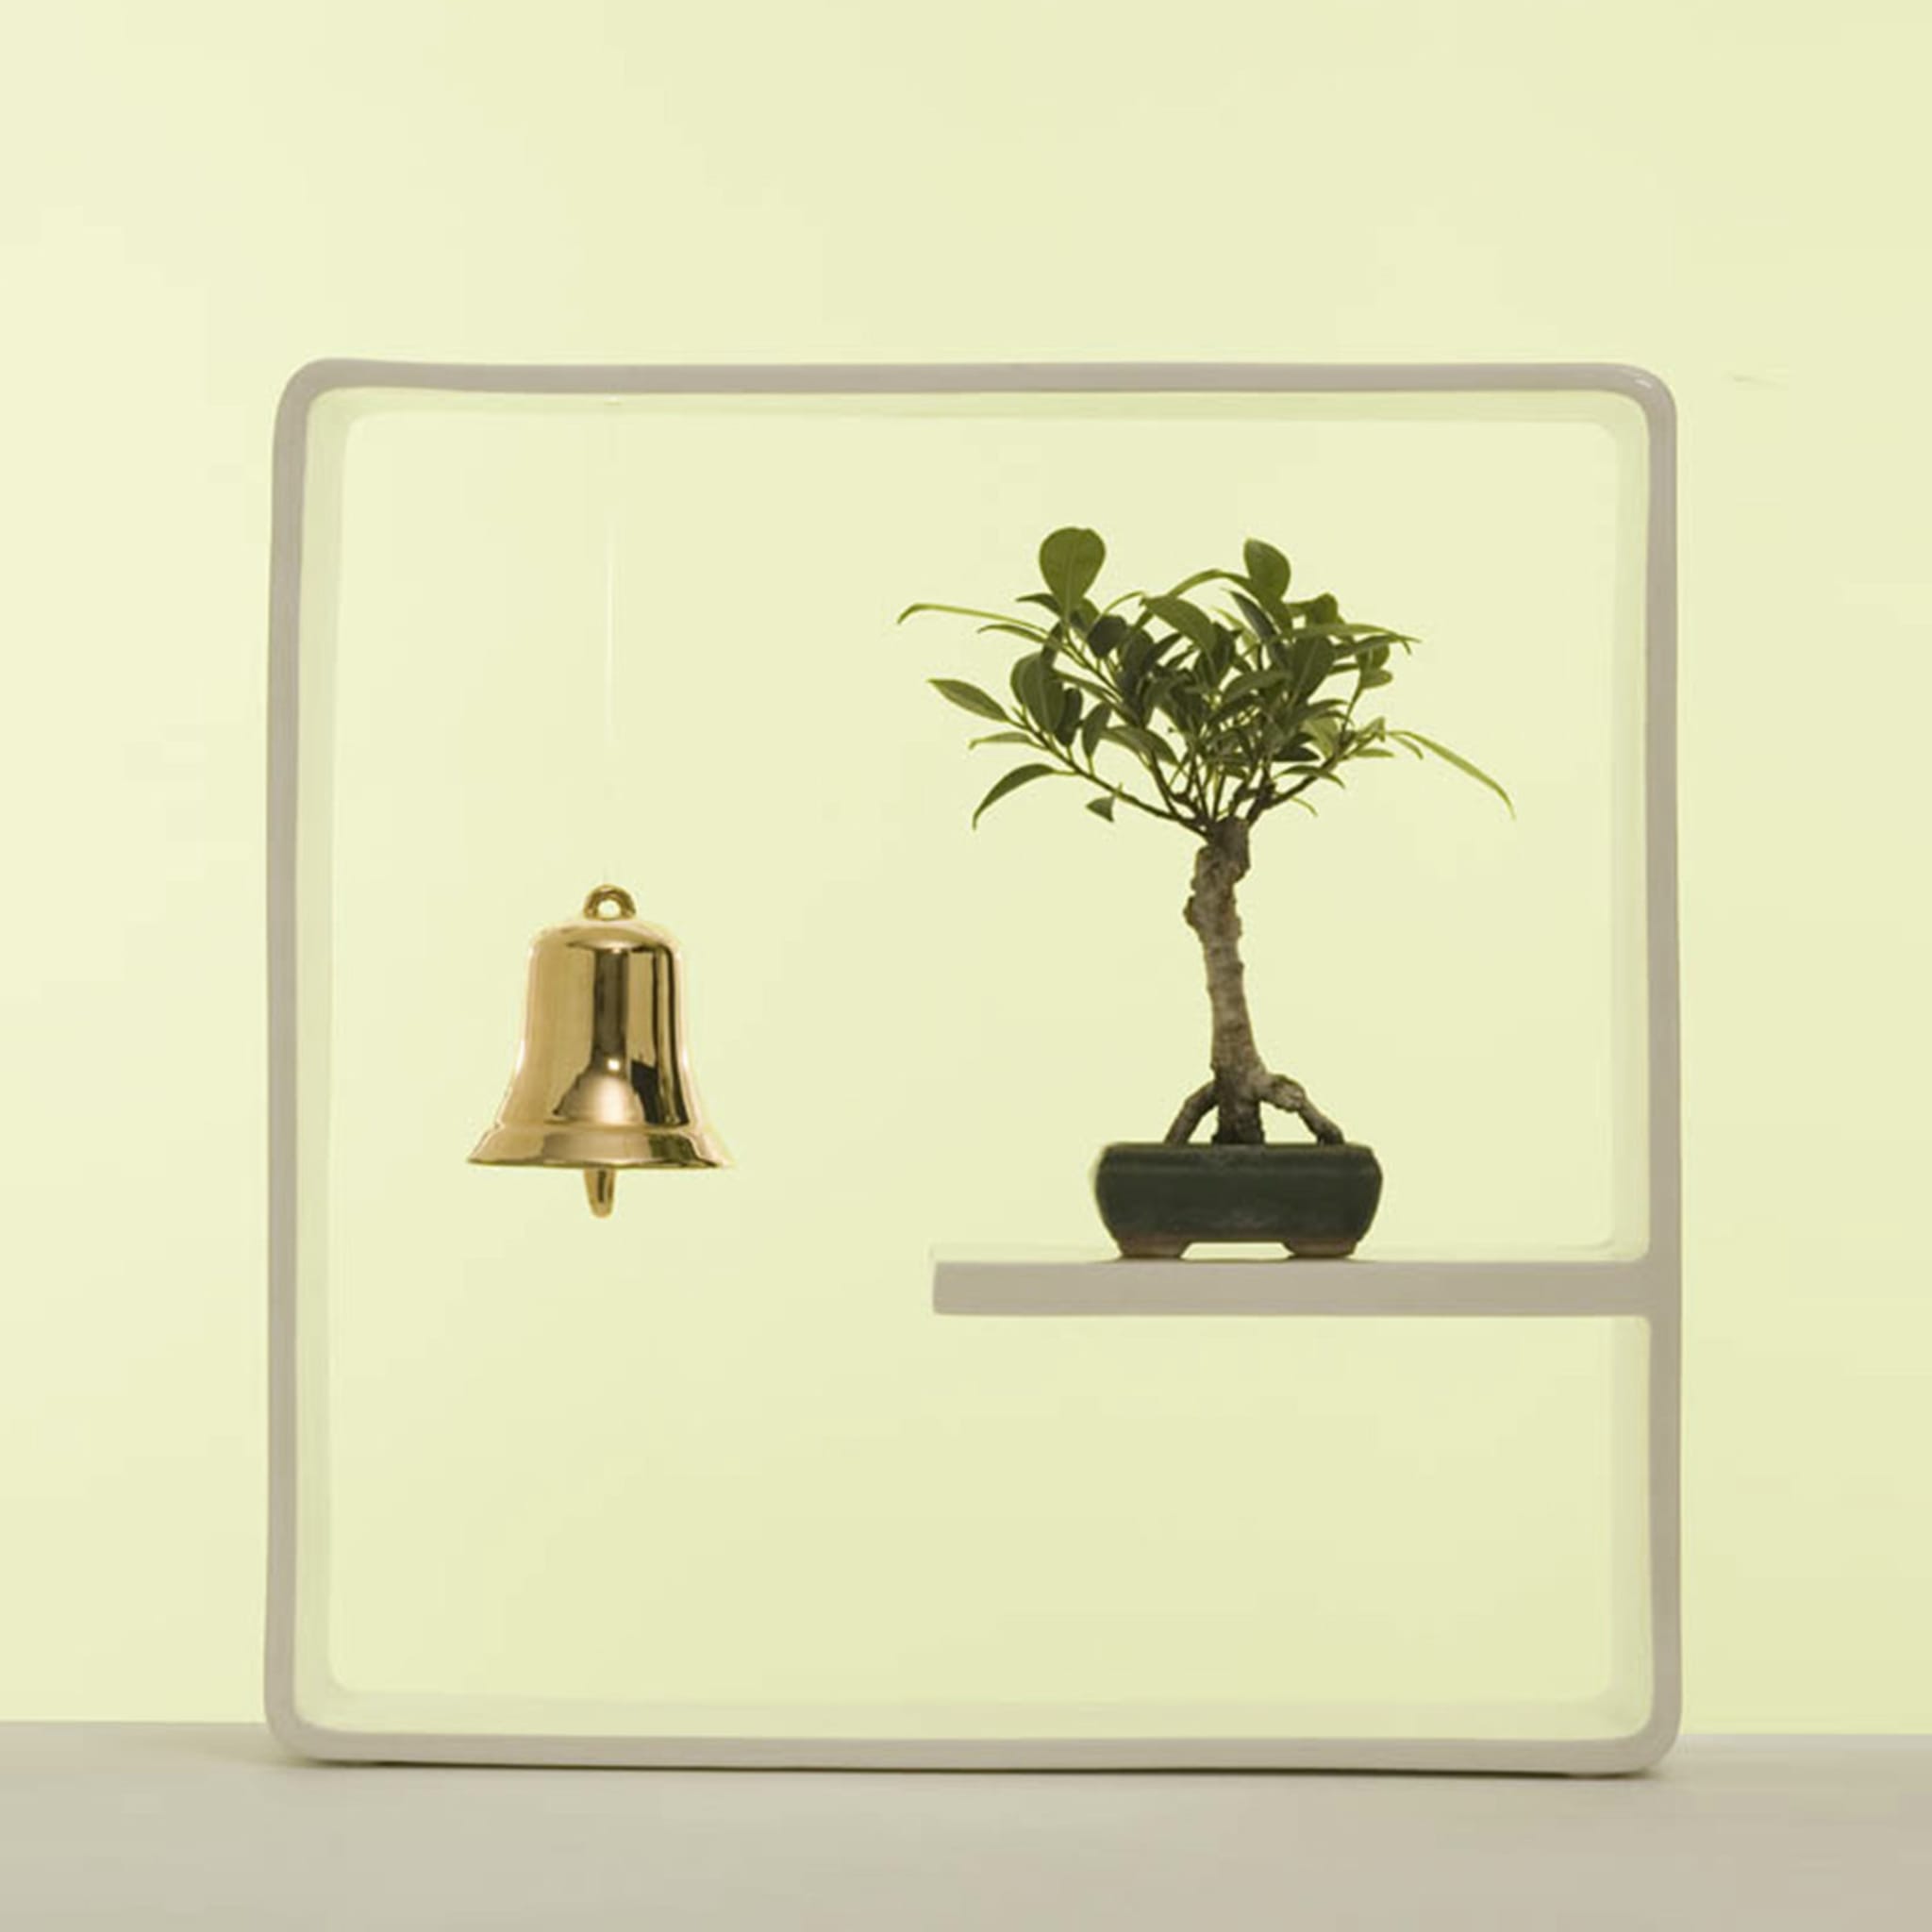 Portali 16 Vase by Andrea Branzi - Alternative view 1